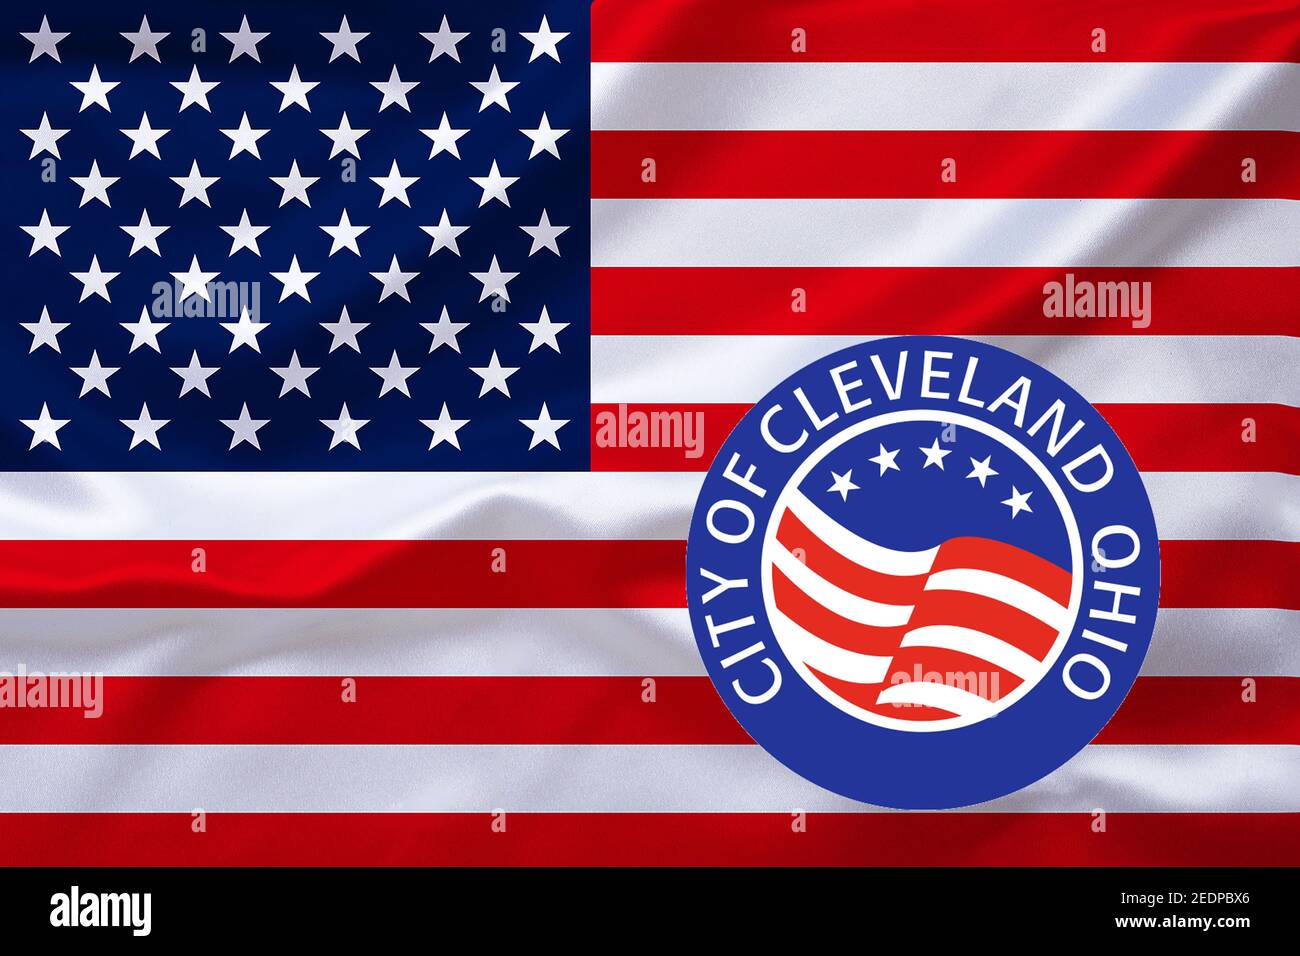 Flagge der USA mit dem Emblem von Cleveland Ohio, USA, Ohio, Cleveland Stockfoto